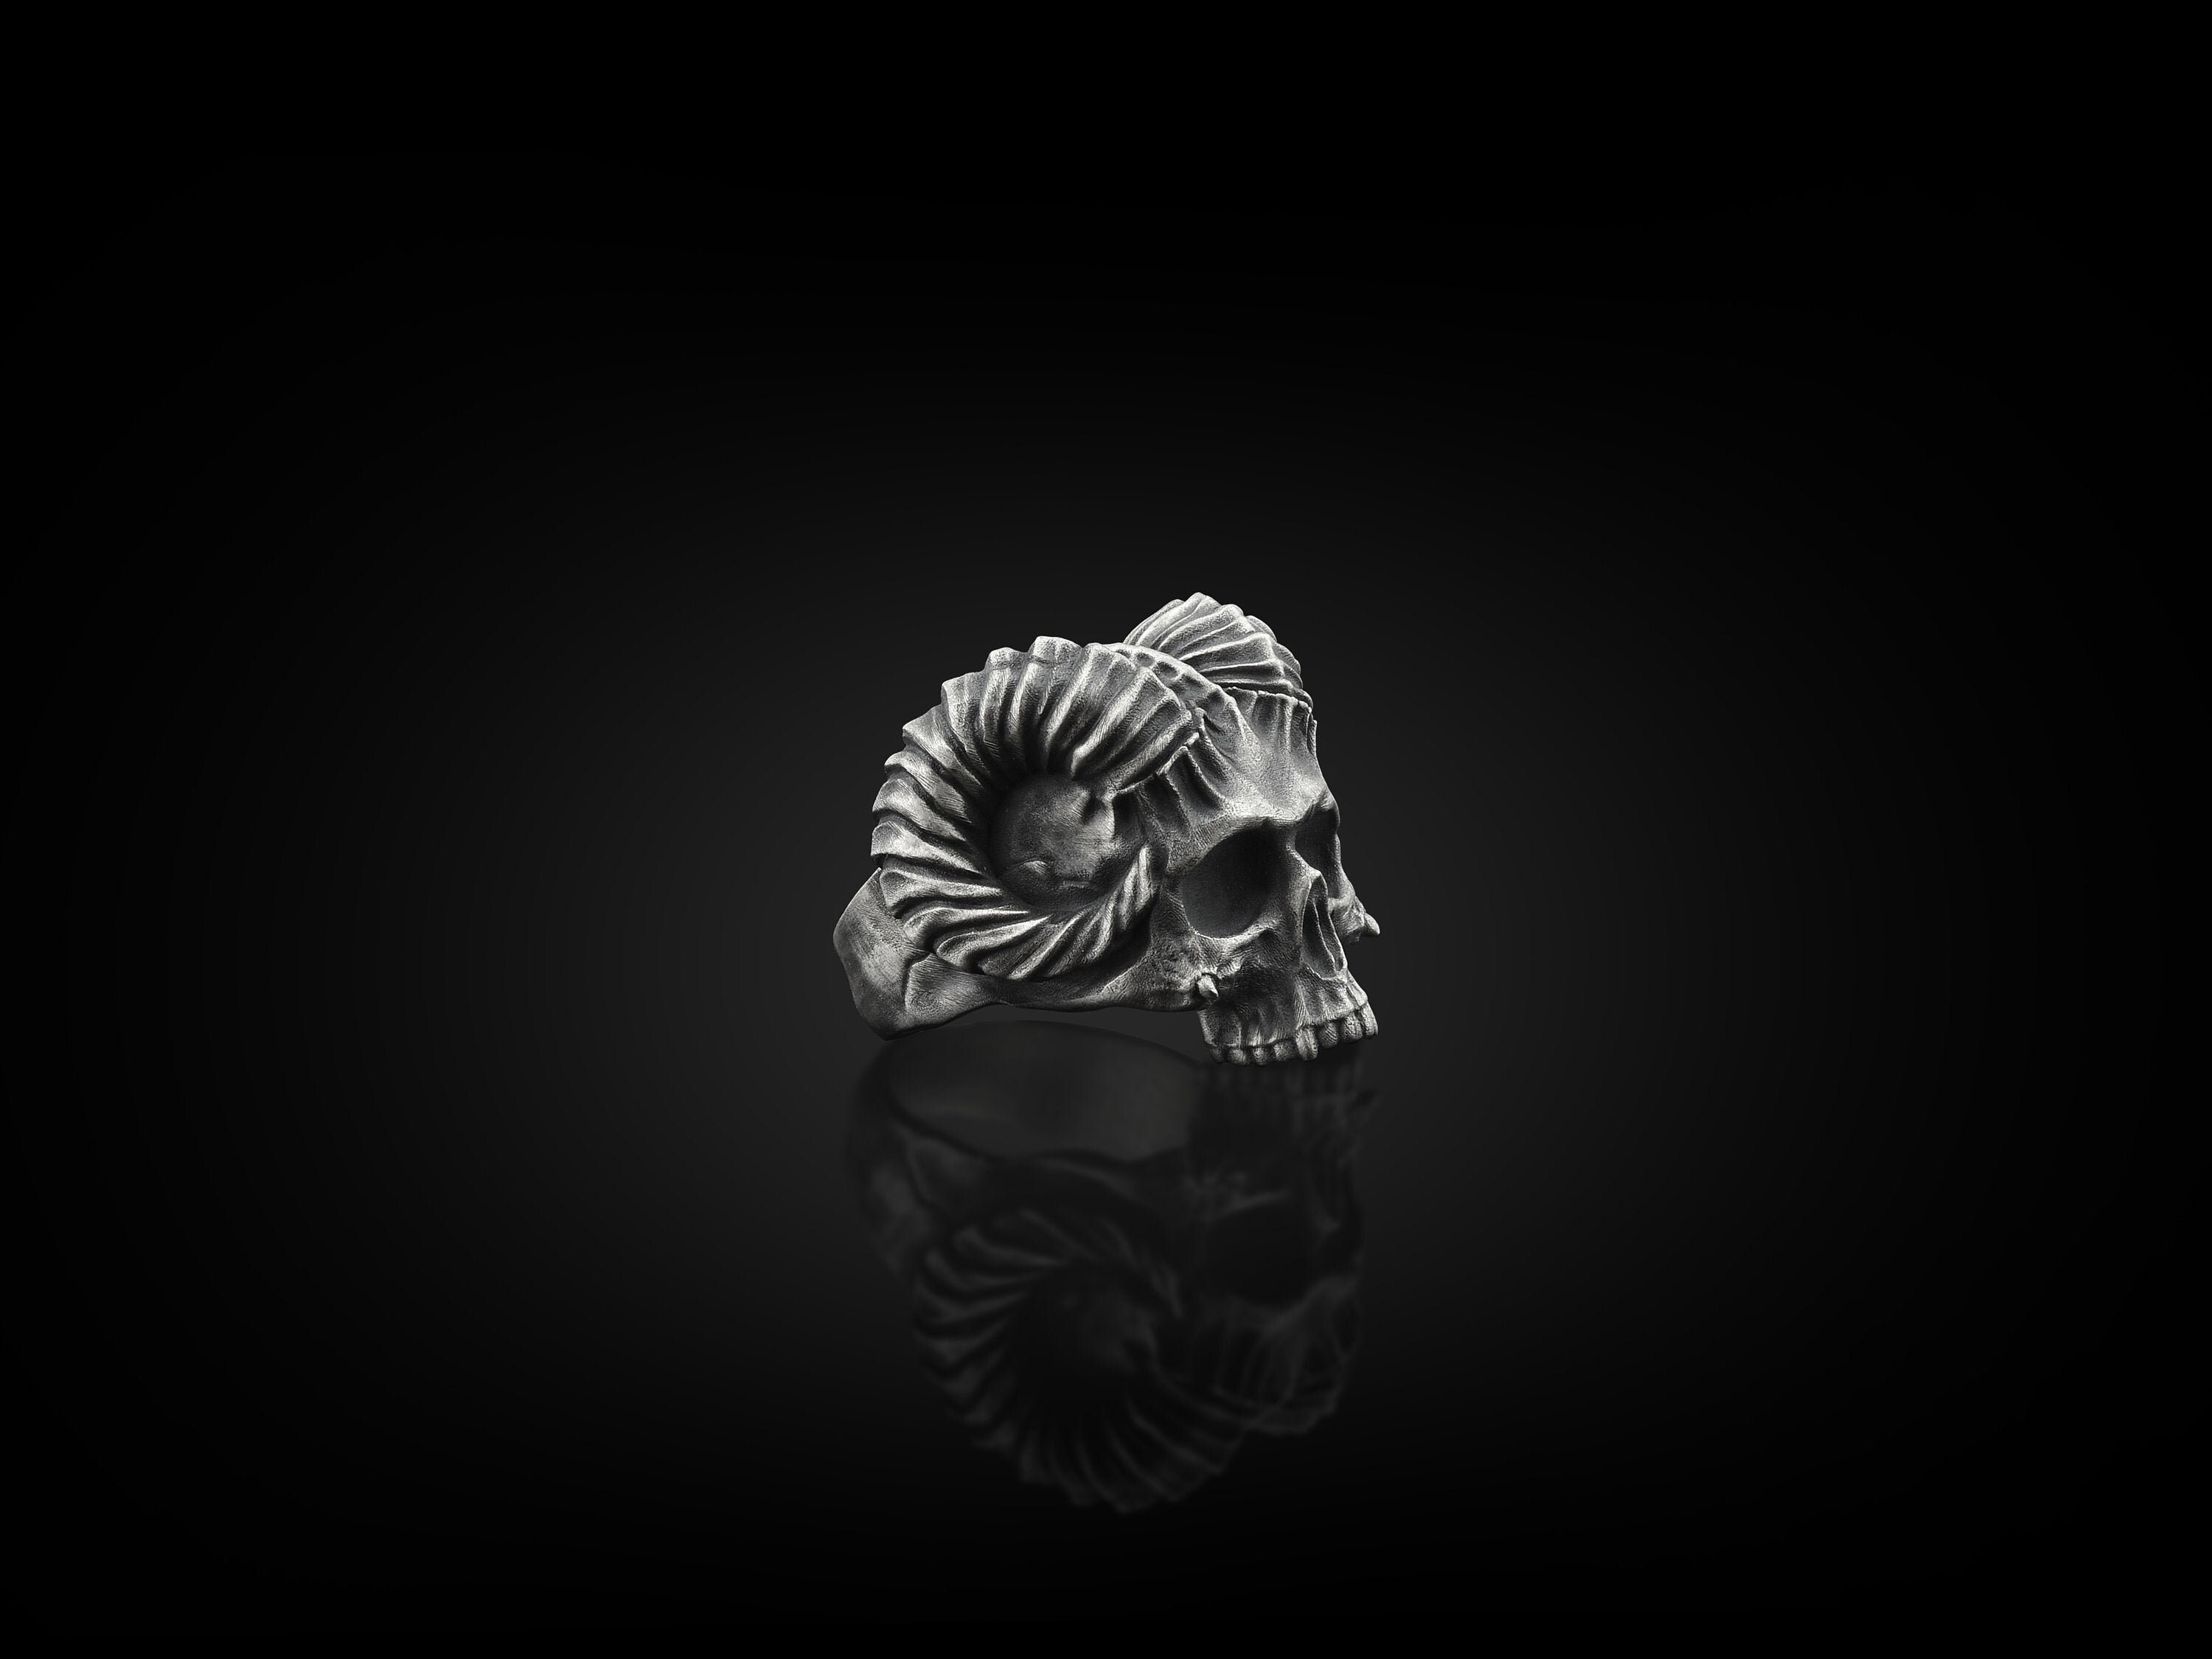 Ram Skull Handmade Sterling Silver Men Biker Ring, Gothic Punk Jewelry, Ring For